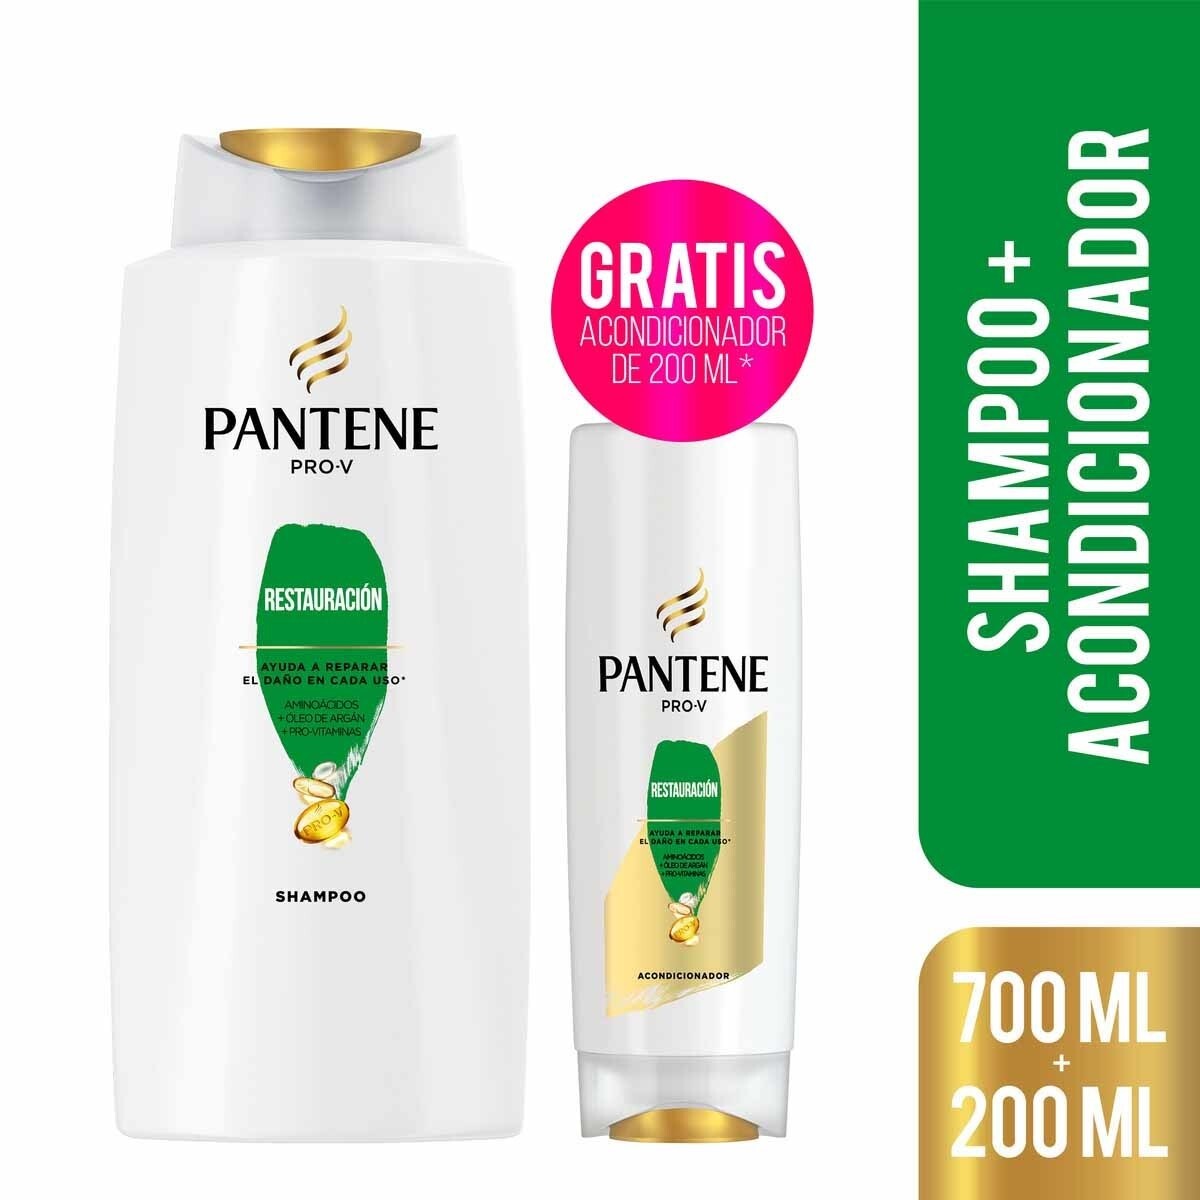 Shampoo Pantene Restauración 700 Ml. + Acondicionador 200 Ml 